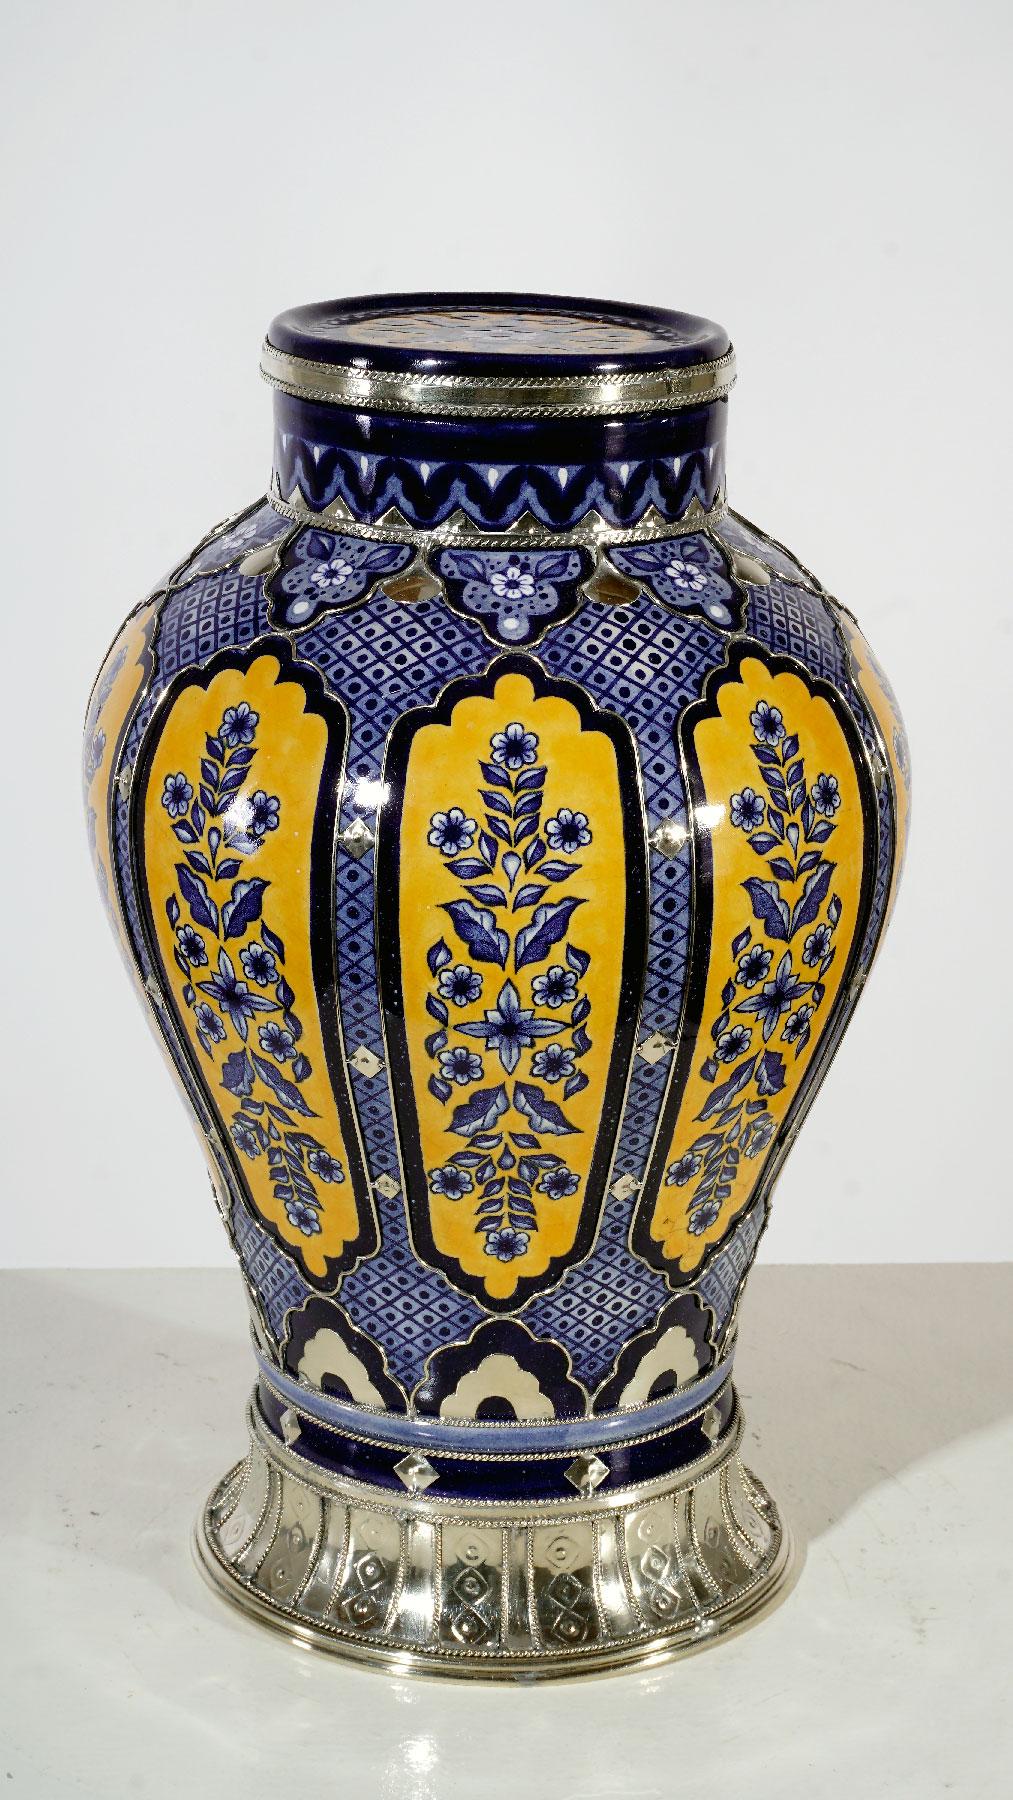 Contemporary Handmade Jar, Ceramic and White Metal ‘Alpaca’, One of a Kind